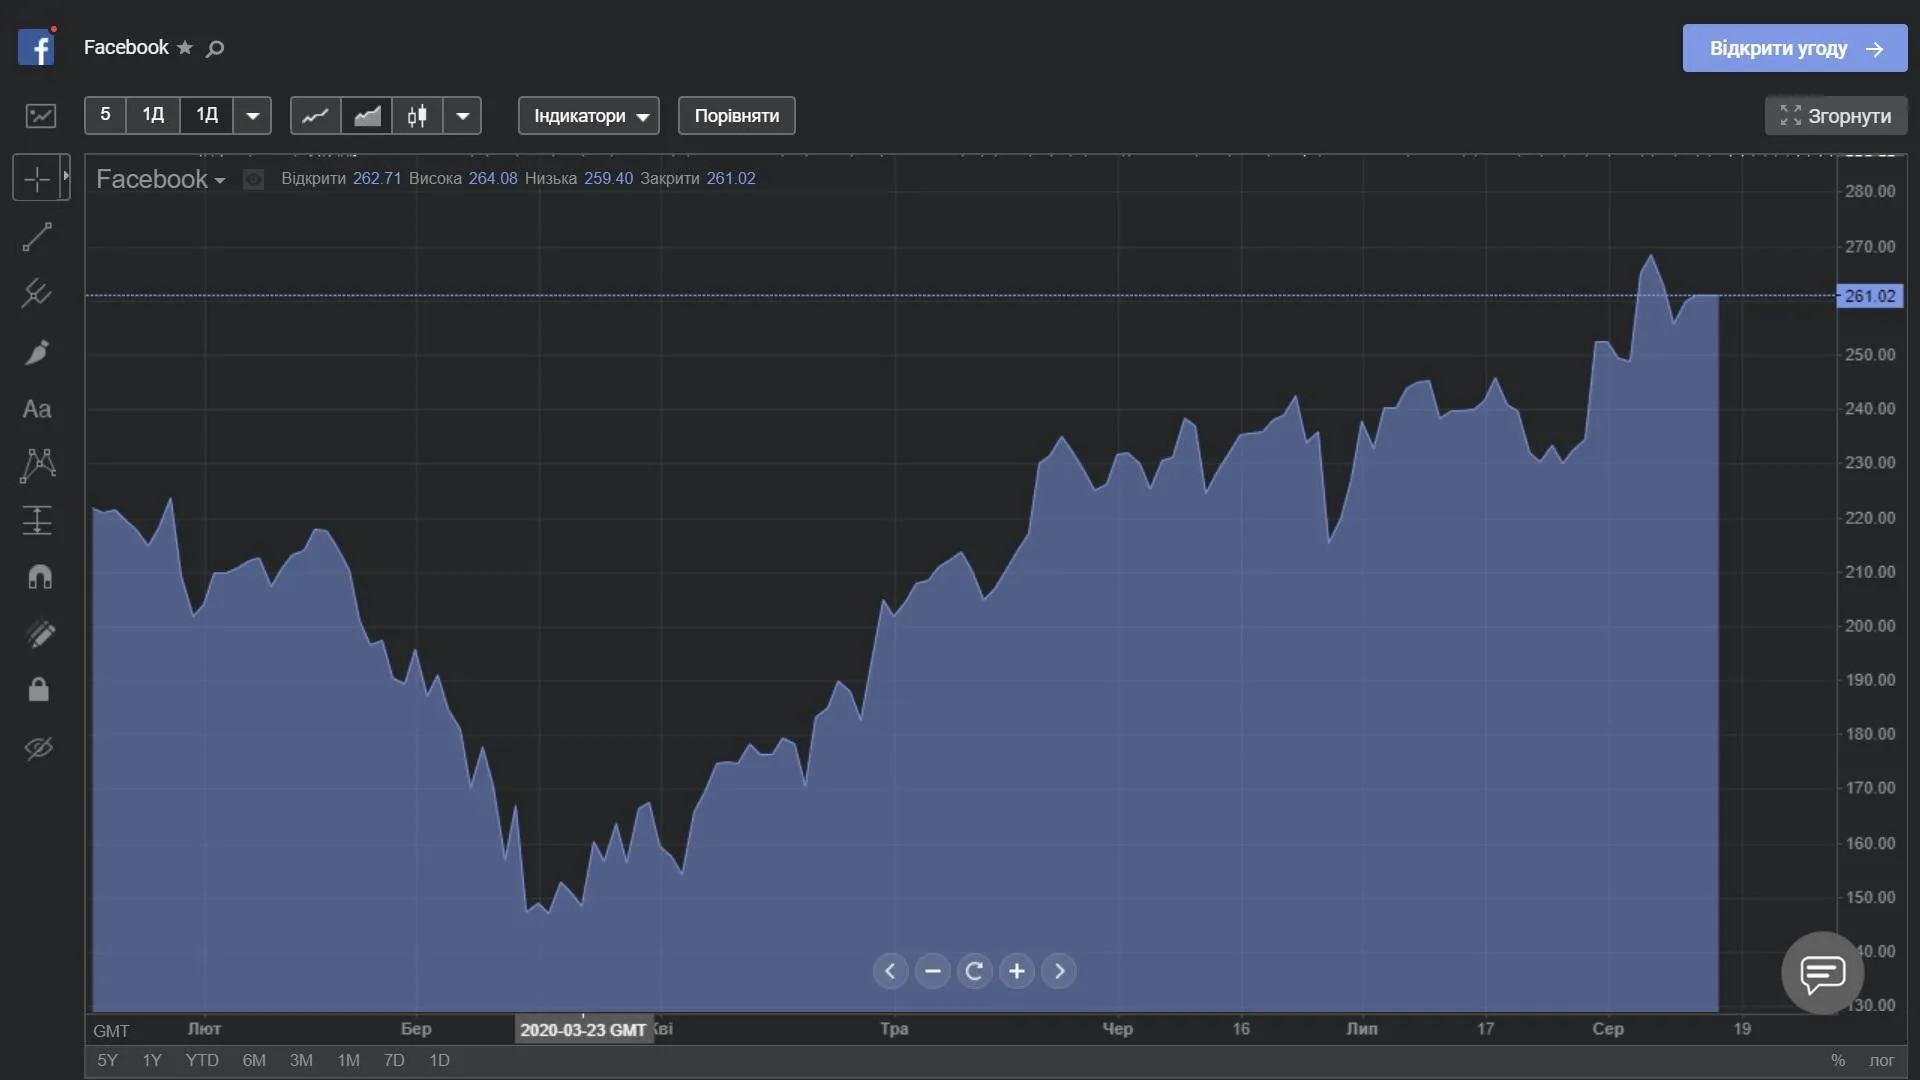 Як змінювалася ціна акцій Facebook з початку року